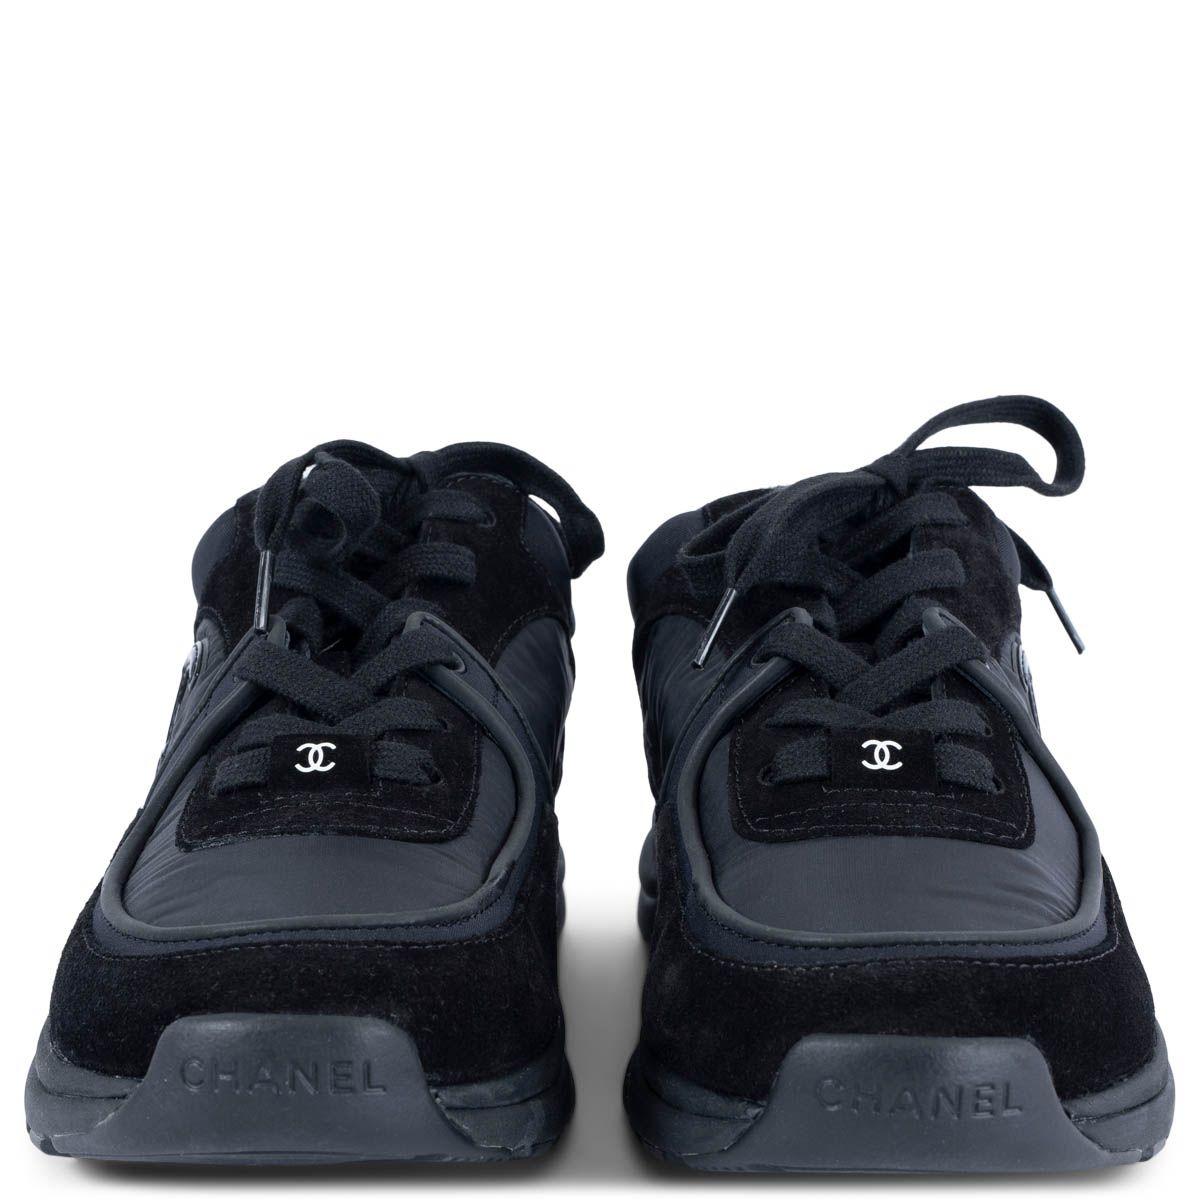 100% authentische Chanel Sneaker zum Schnüren aus schwarzem Wildleder und Nylon. Das Design zeichnet sich durch schwarze Gummisohlen und ein glänzendes CC-Logo an der Seite aus. Teil der Revolving Collection'S. Sie wurden ein- oder zweimal getragen